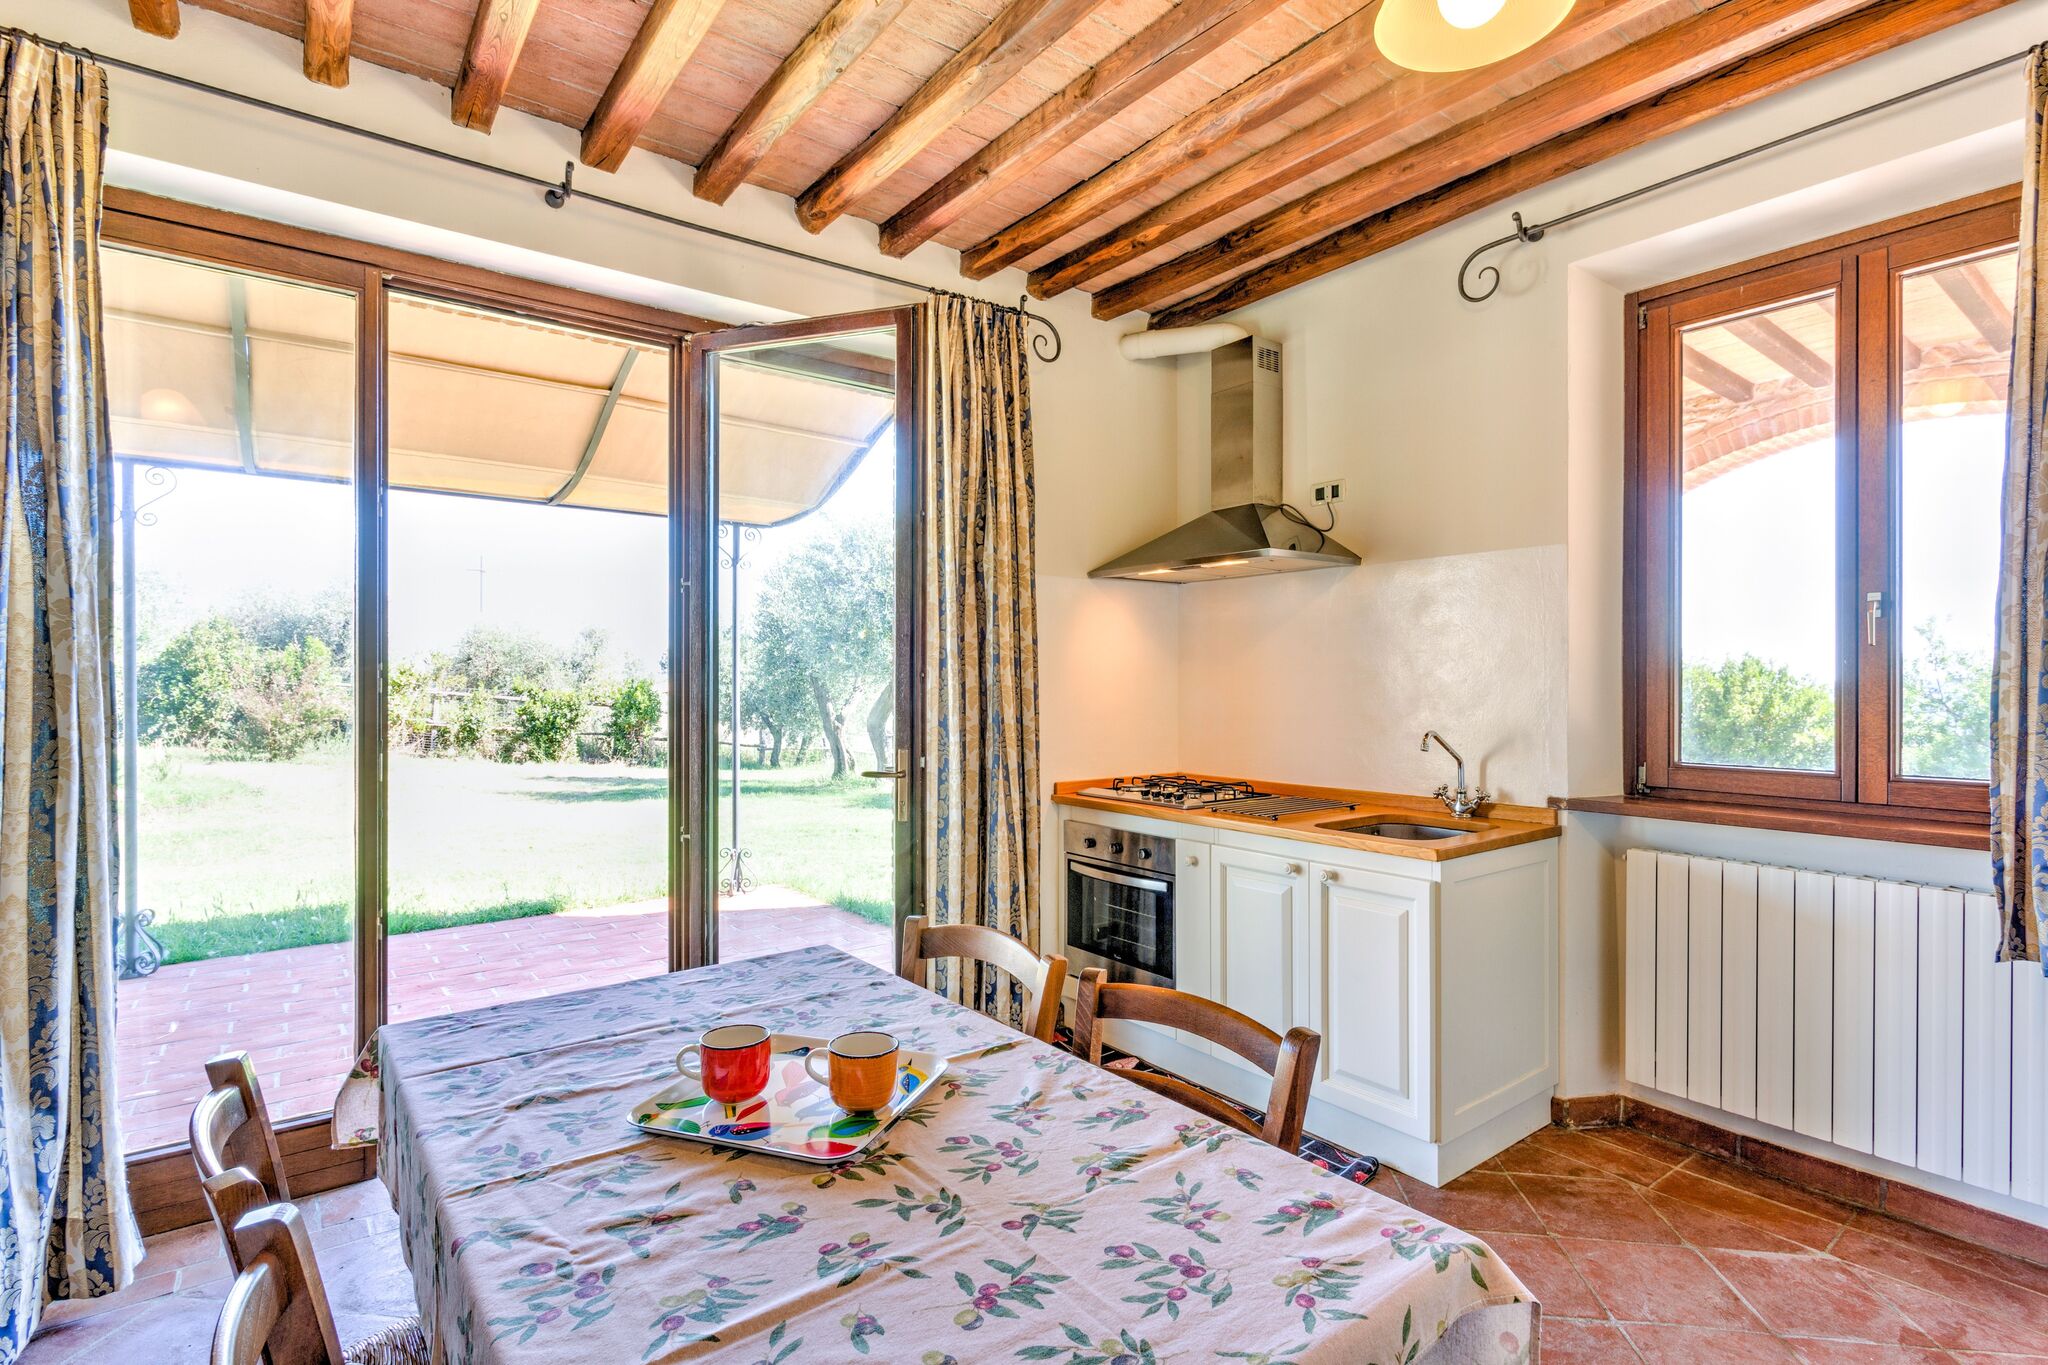 Maison de vacances privée à Suvereto Toscane avec oliviers